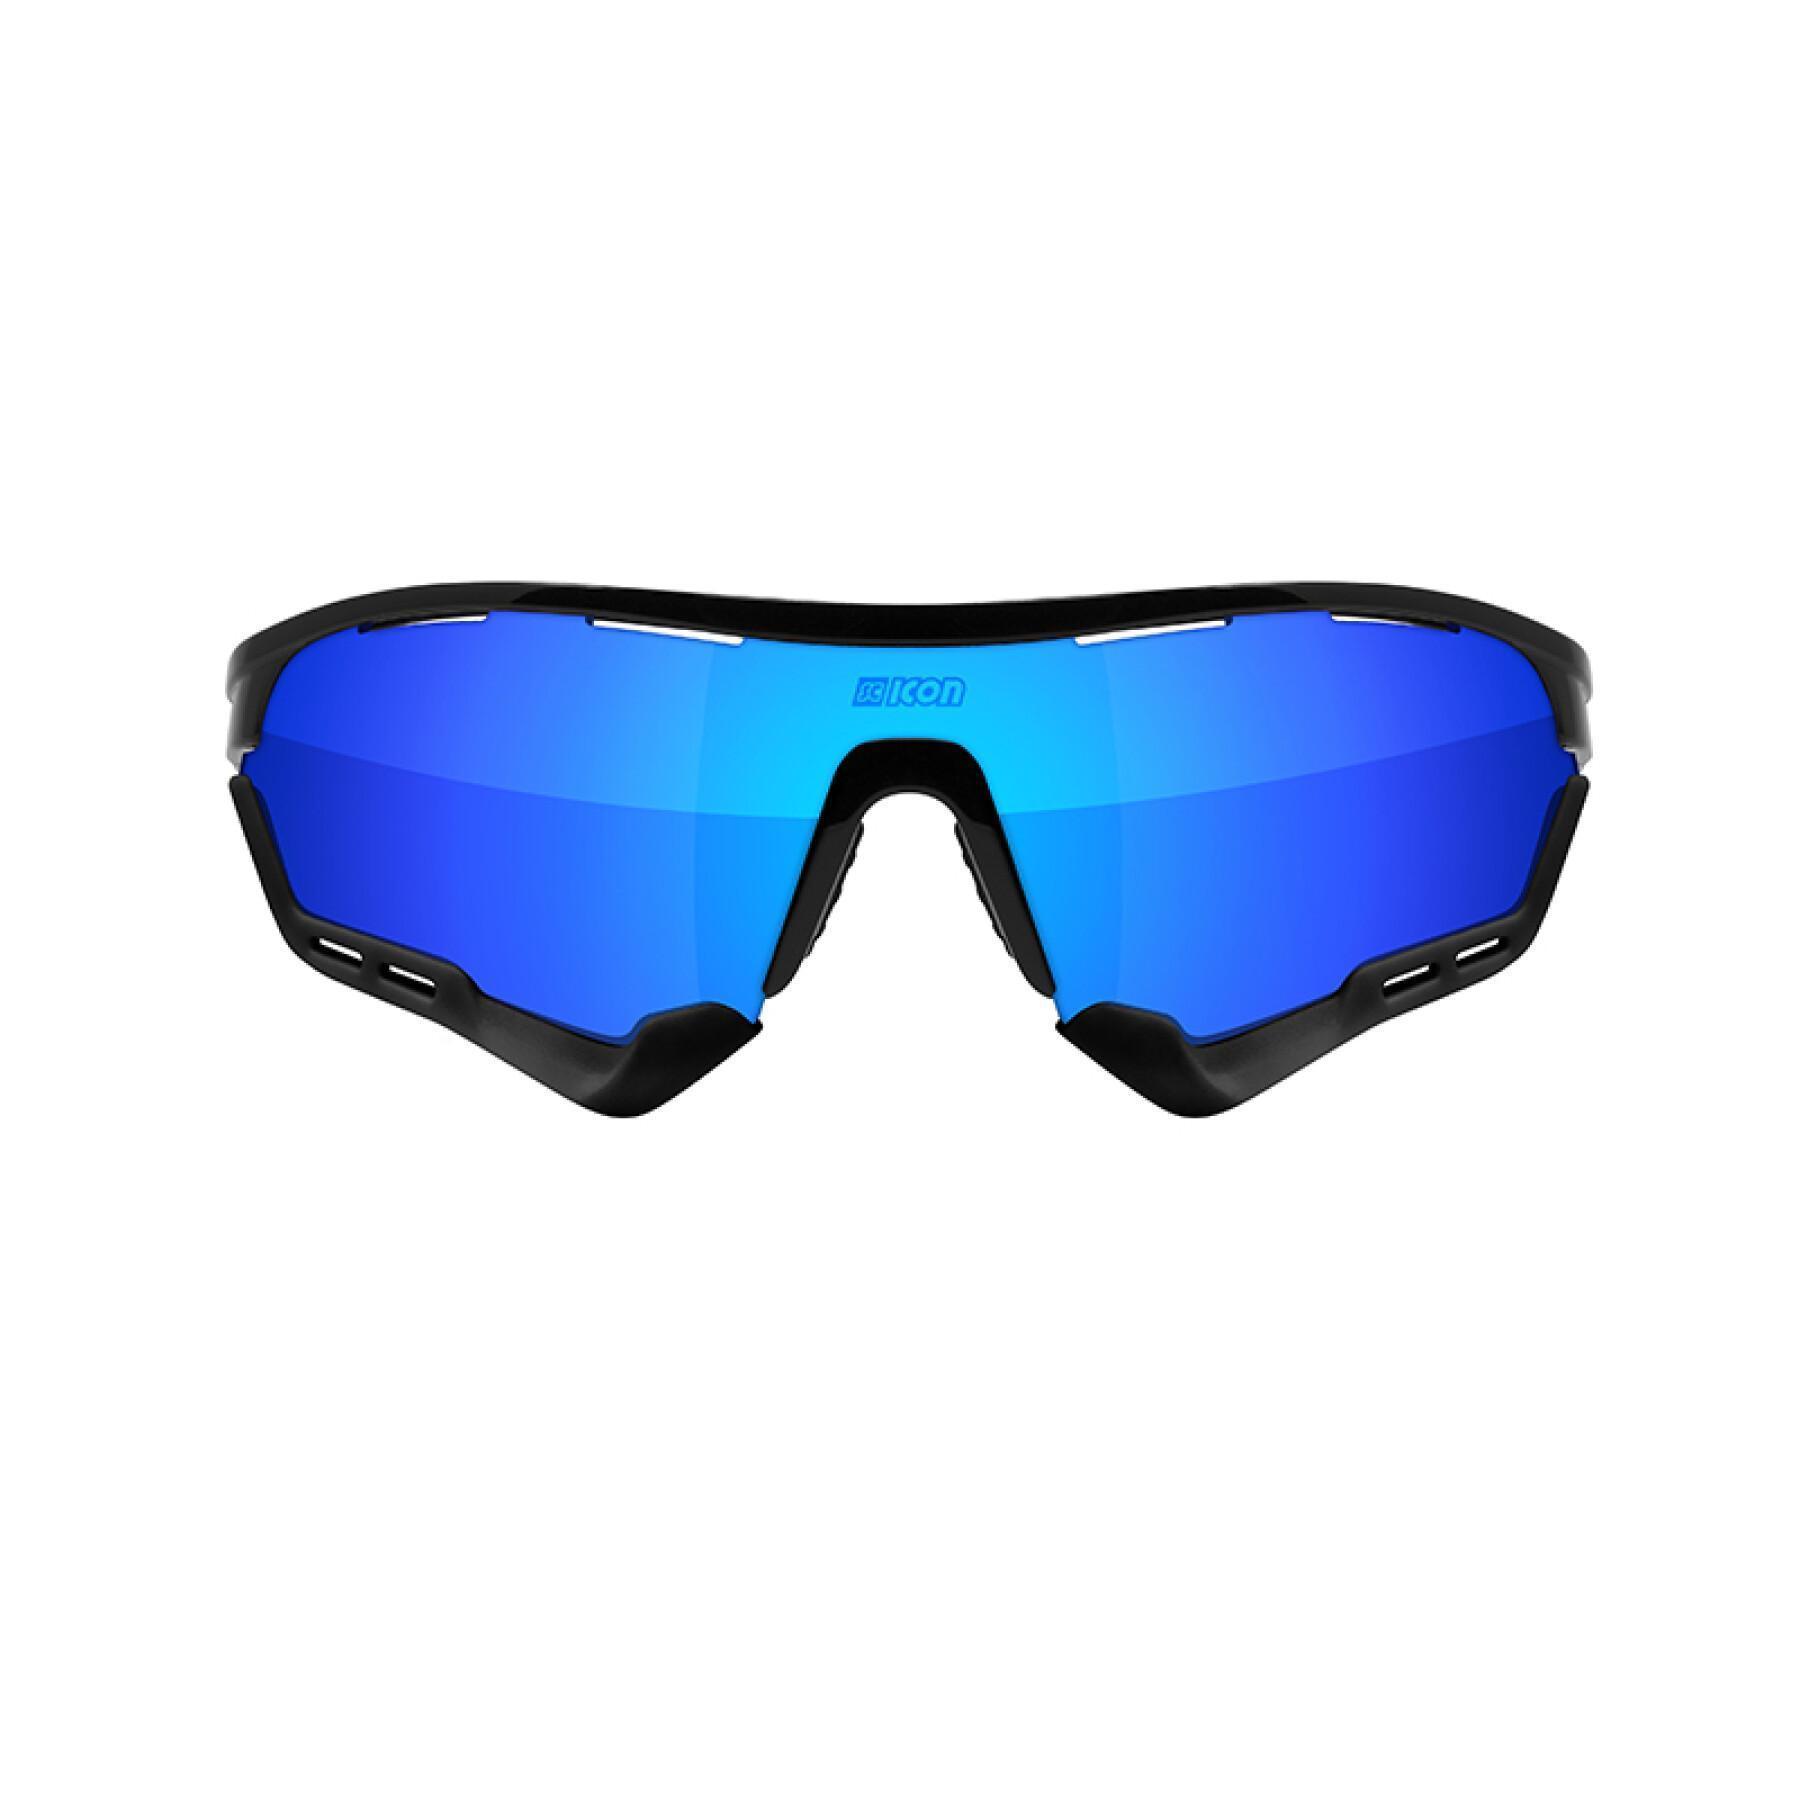 Lunettes Scicon aerotech scnpp verre multi-reflet bleues